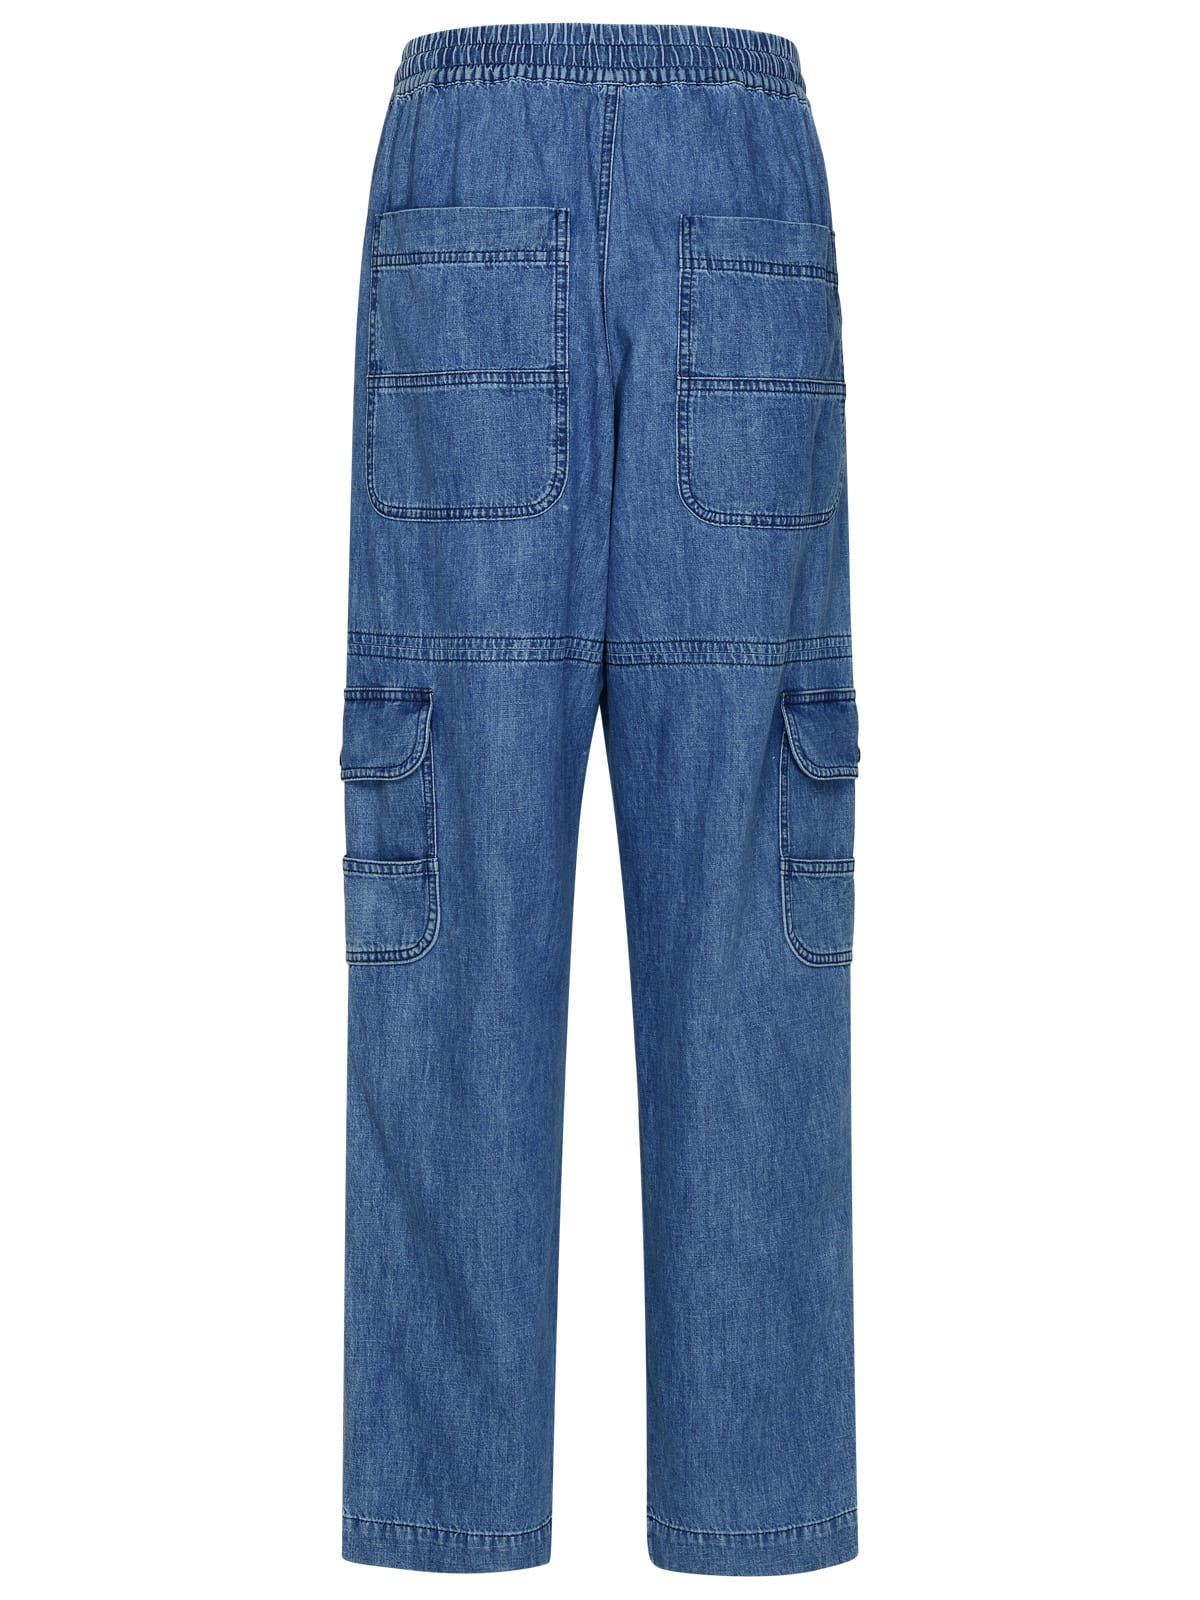 Shop Isabel Marant Vanni Light Blue Cotton Pants